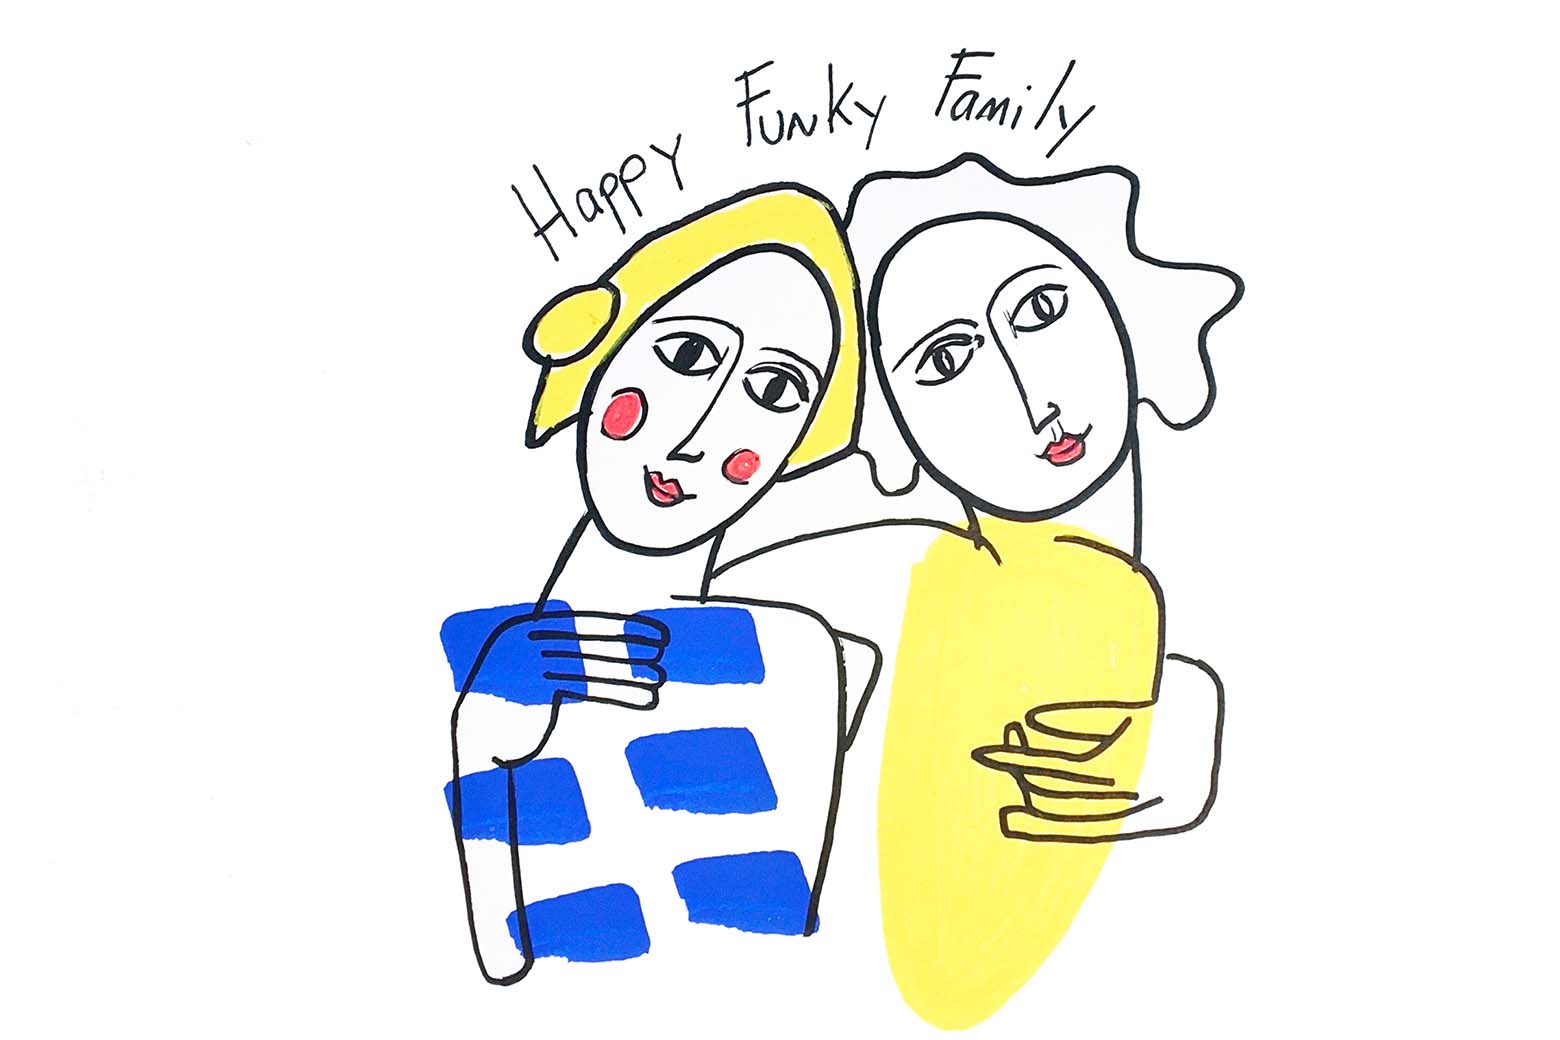 Happy Funky Family